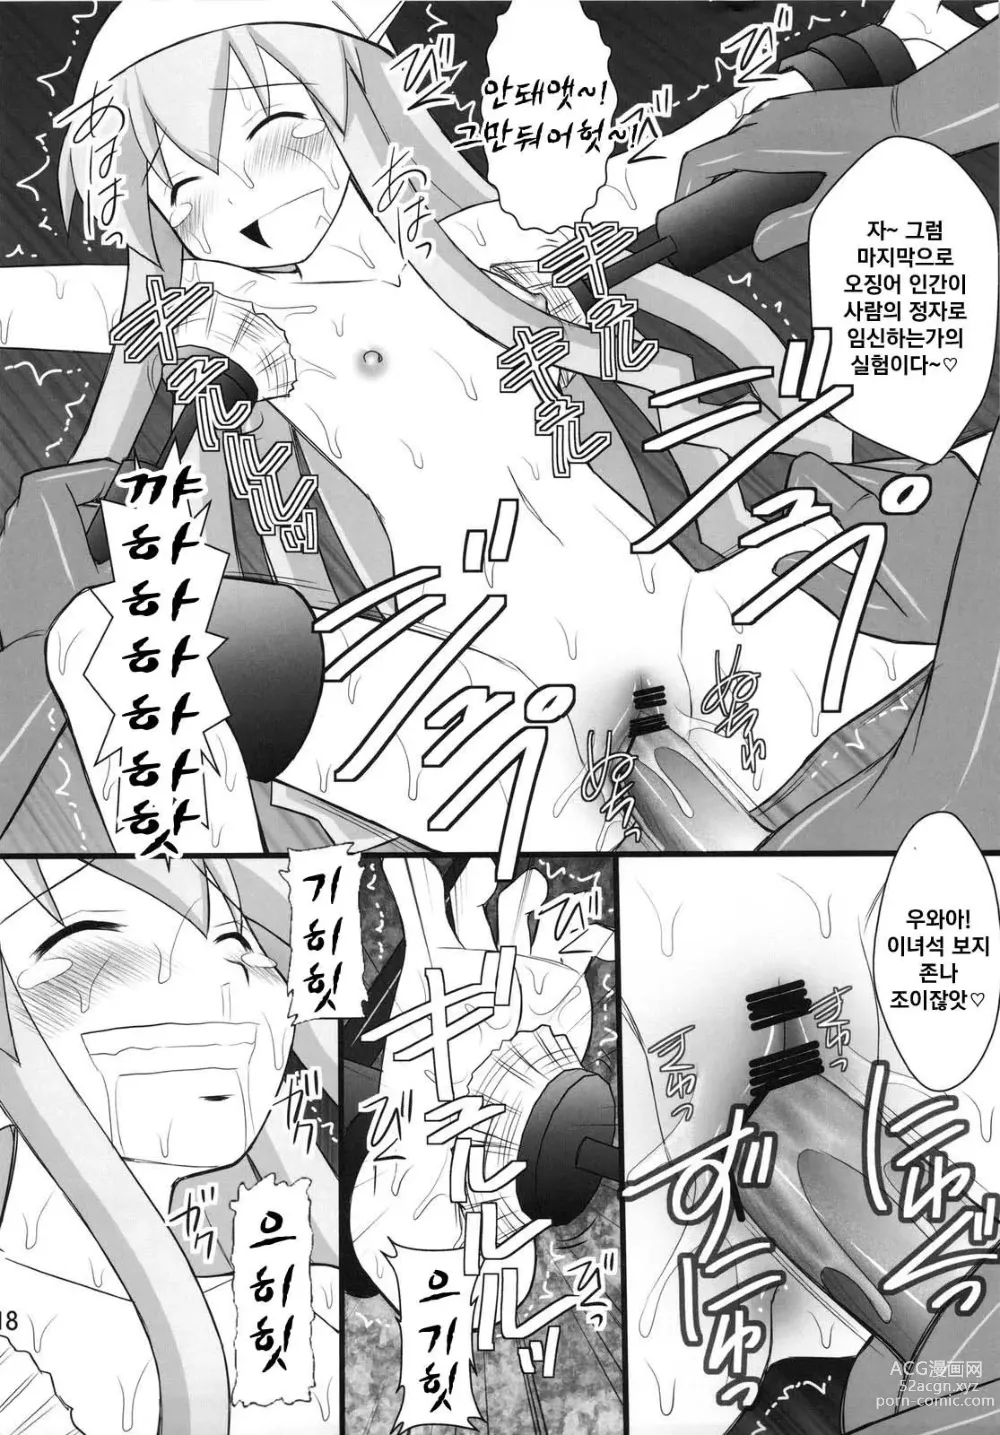 Page 16 of doujinshi 정신붕괴 할 때까지 간지럽히고 능욕해보는 테스트 4 오징어 소녀 하지 않겠는가